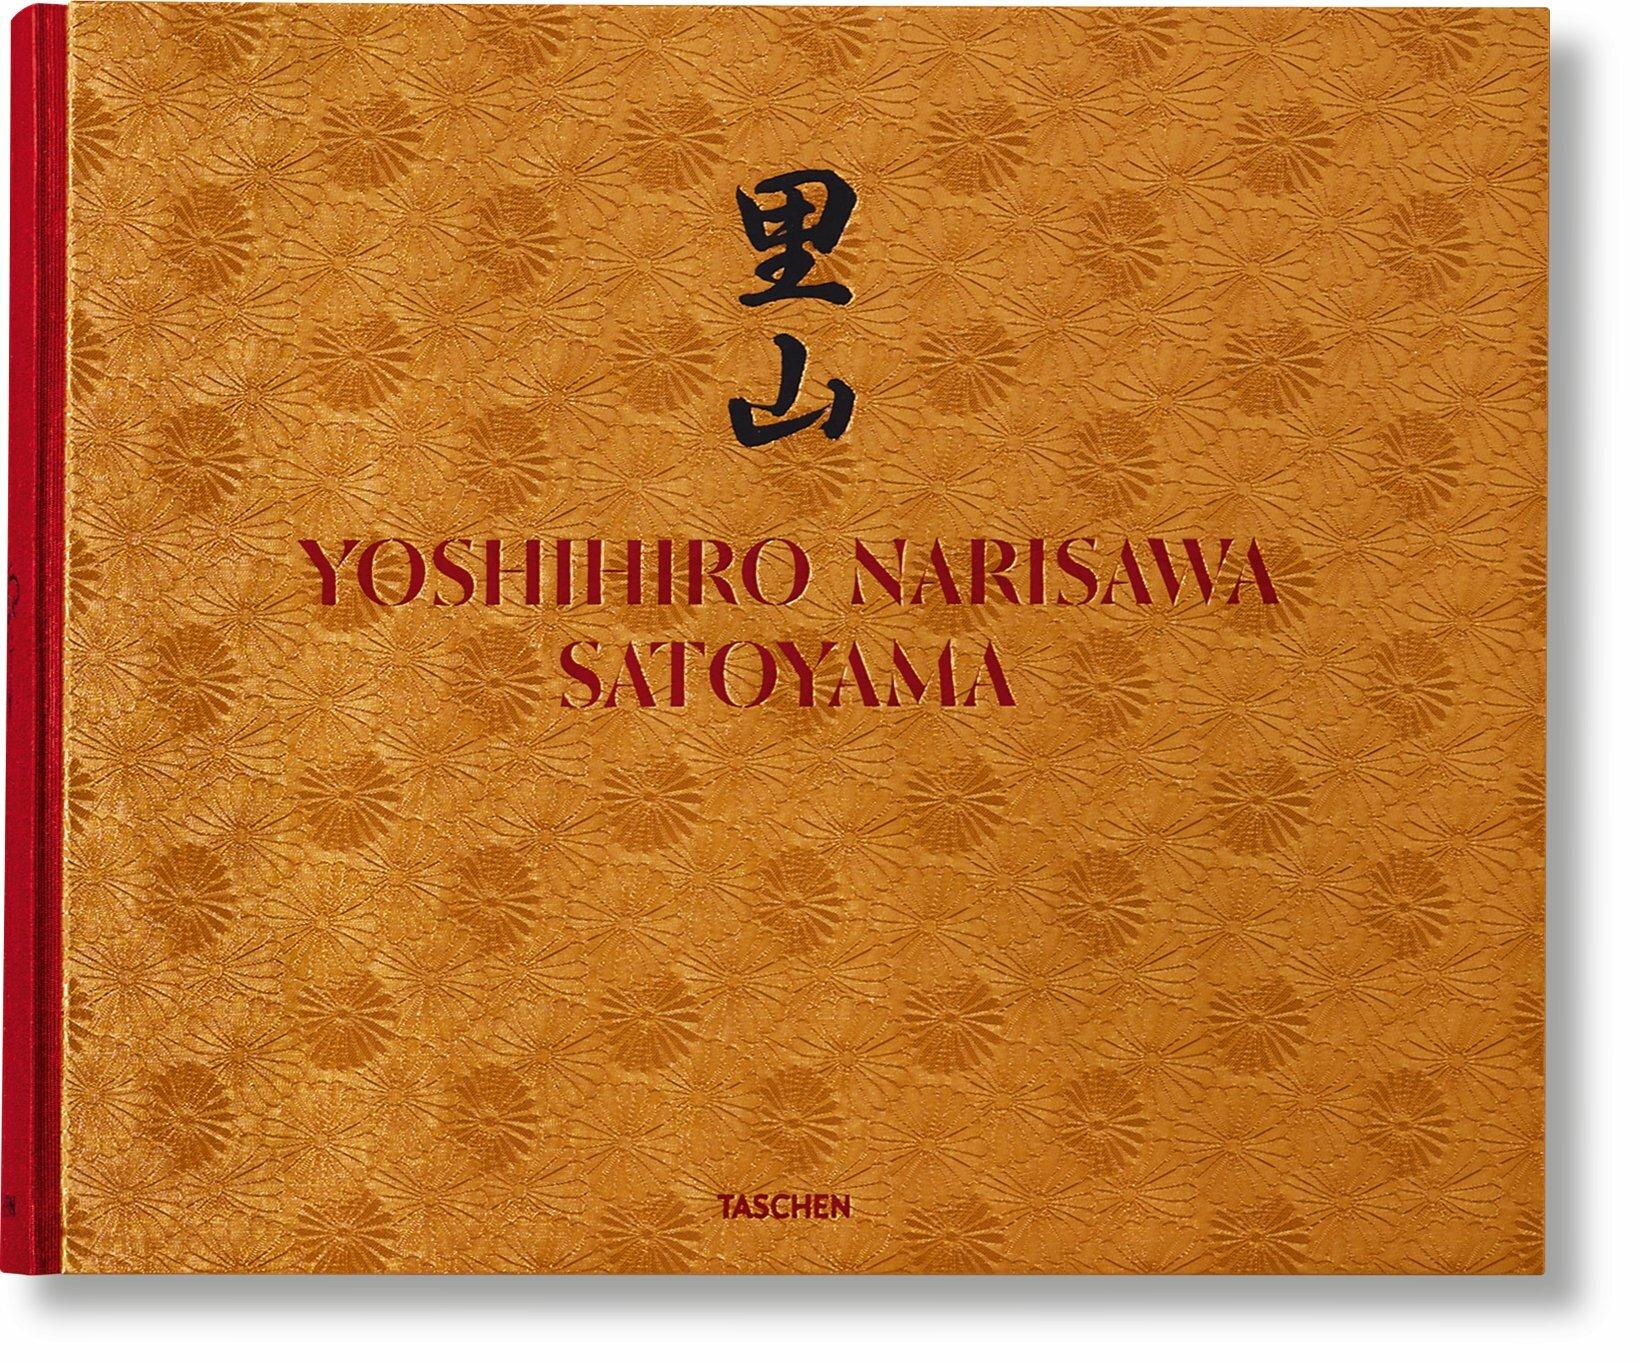 Nachhaltige Gastronomie

Yoshihiro Narisawas Manifest über eine Küche im Einklang mit der Natur

Der preisgekrönte japanische Küchenchef Yoshihiro Narisawa hat sich auf seine Heimat und die Natur besonnen, um seine innovative Satoyama-Küche und